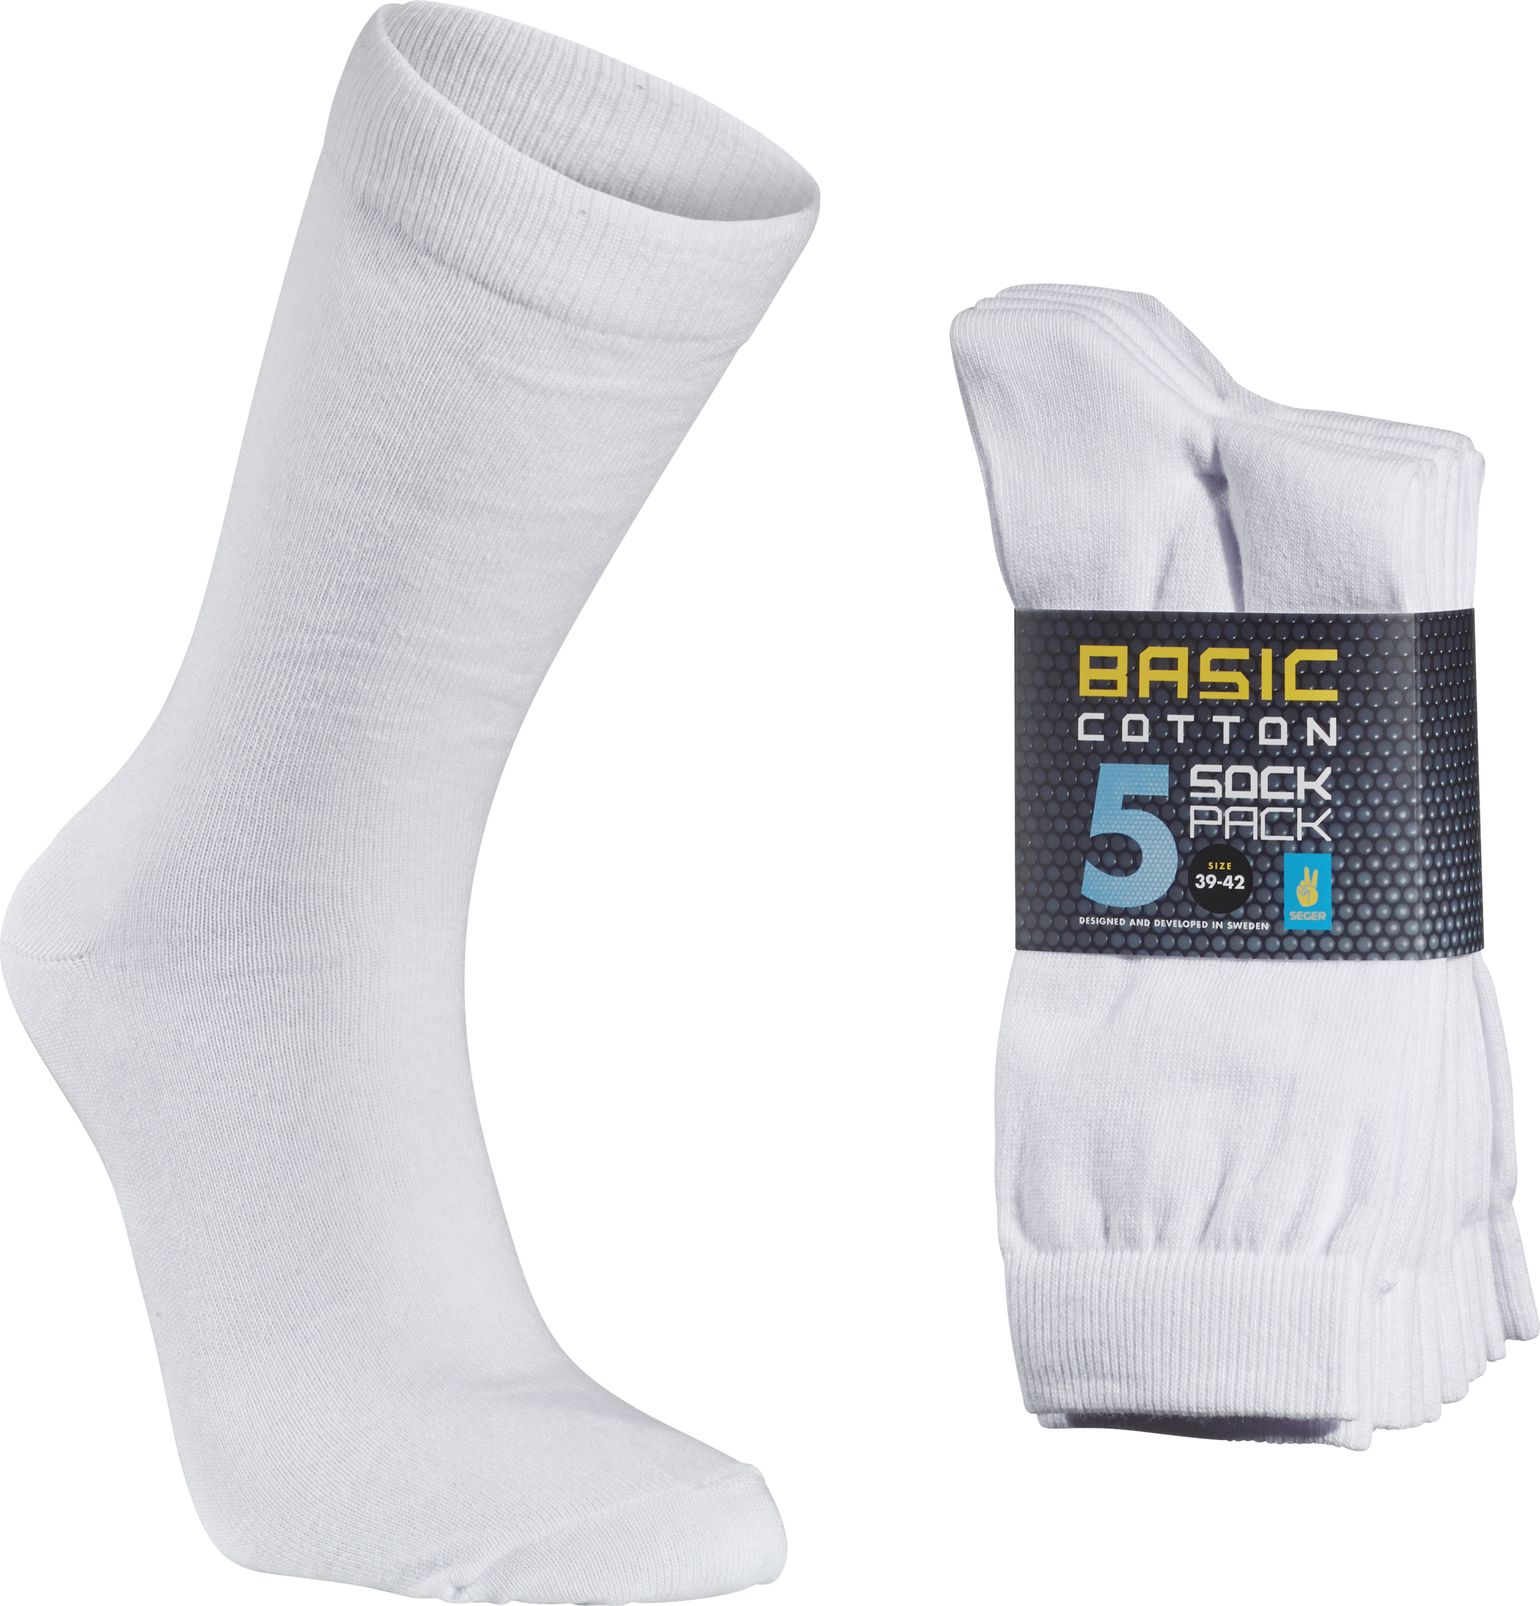 Seger Basic Cotton Sock 5-pack White